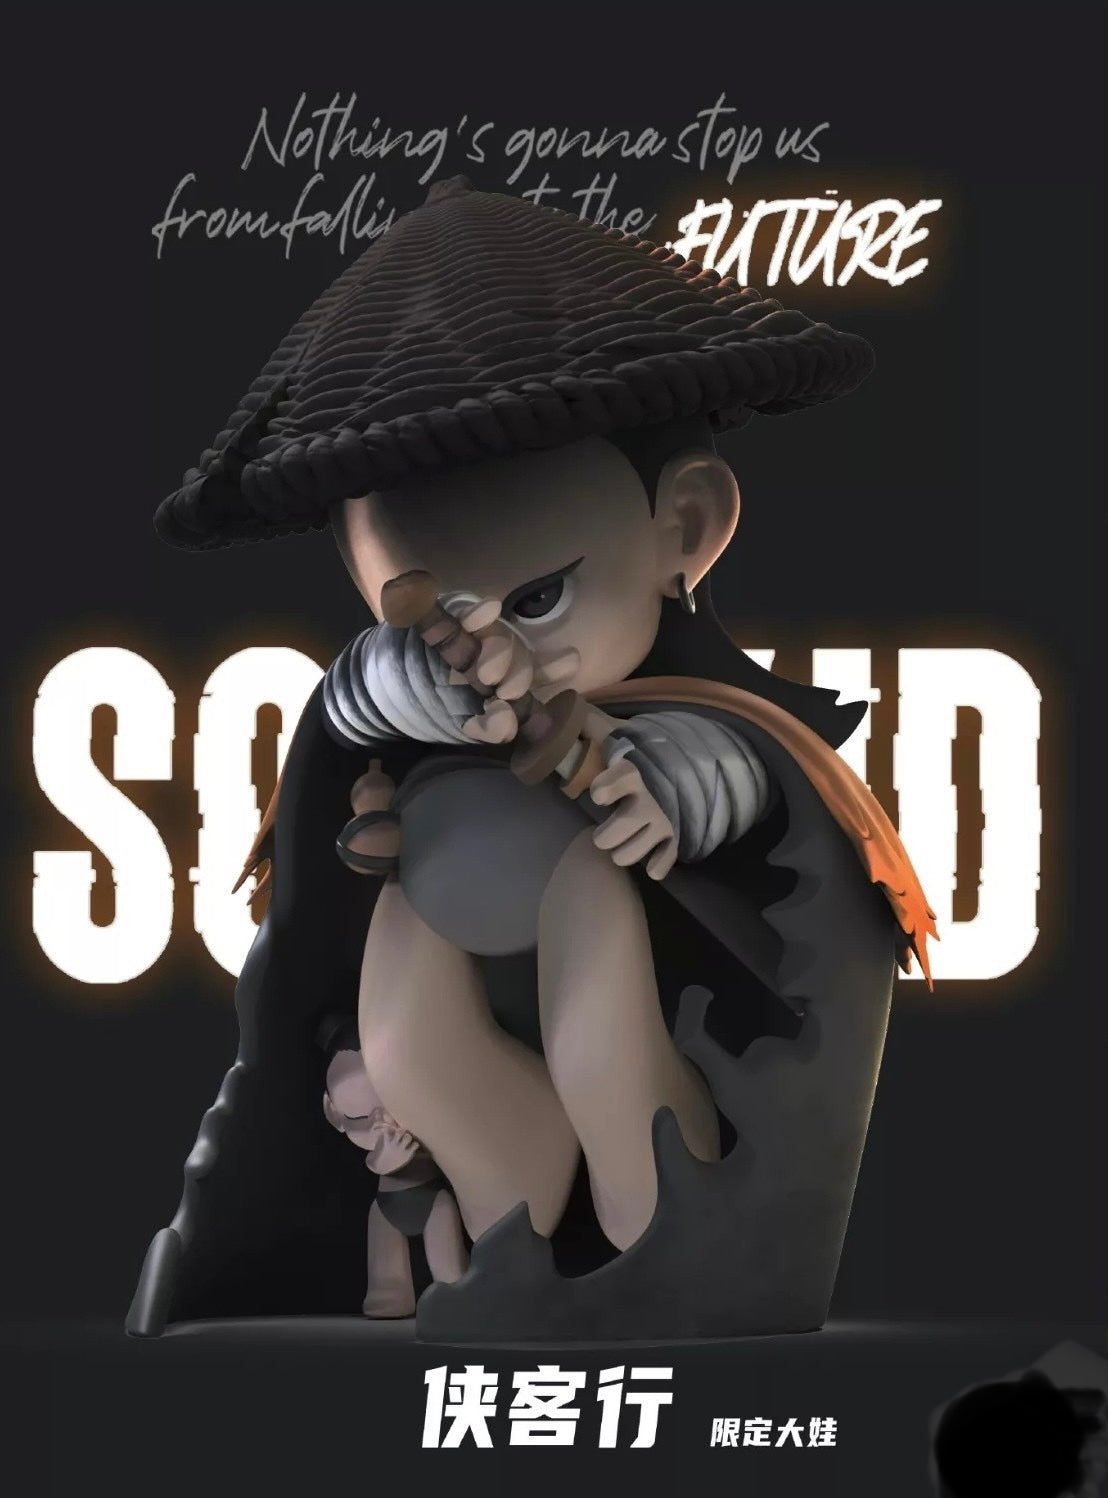 [FUNFORFUN] SOS KID - Limited Art Toy